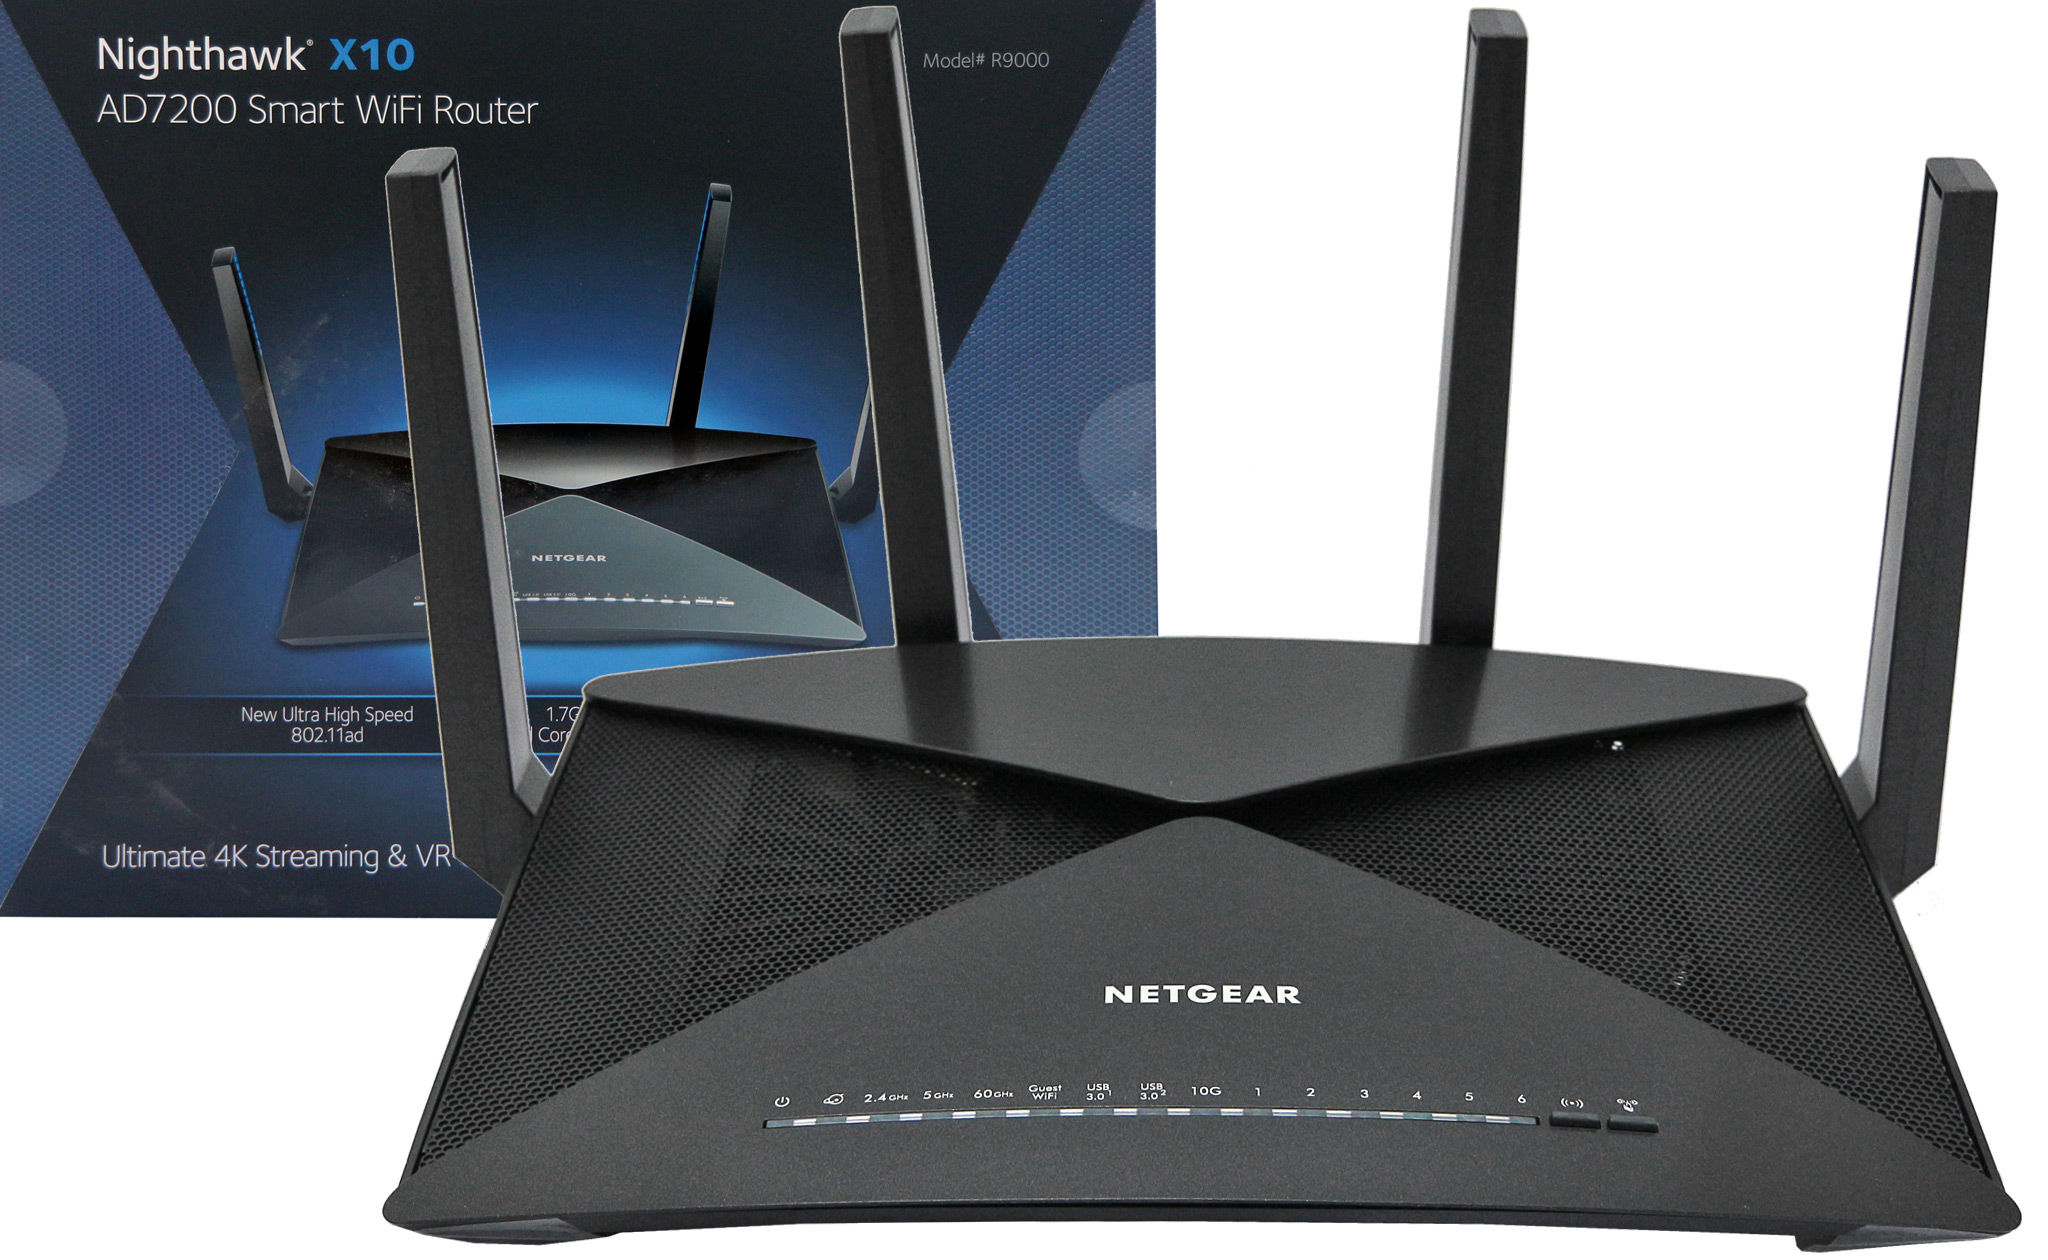 NETGEAR Nighthawk X10 R9000 AD7200 802.11ad Wireless Router | KitGuru